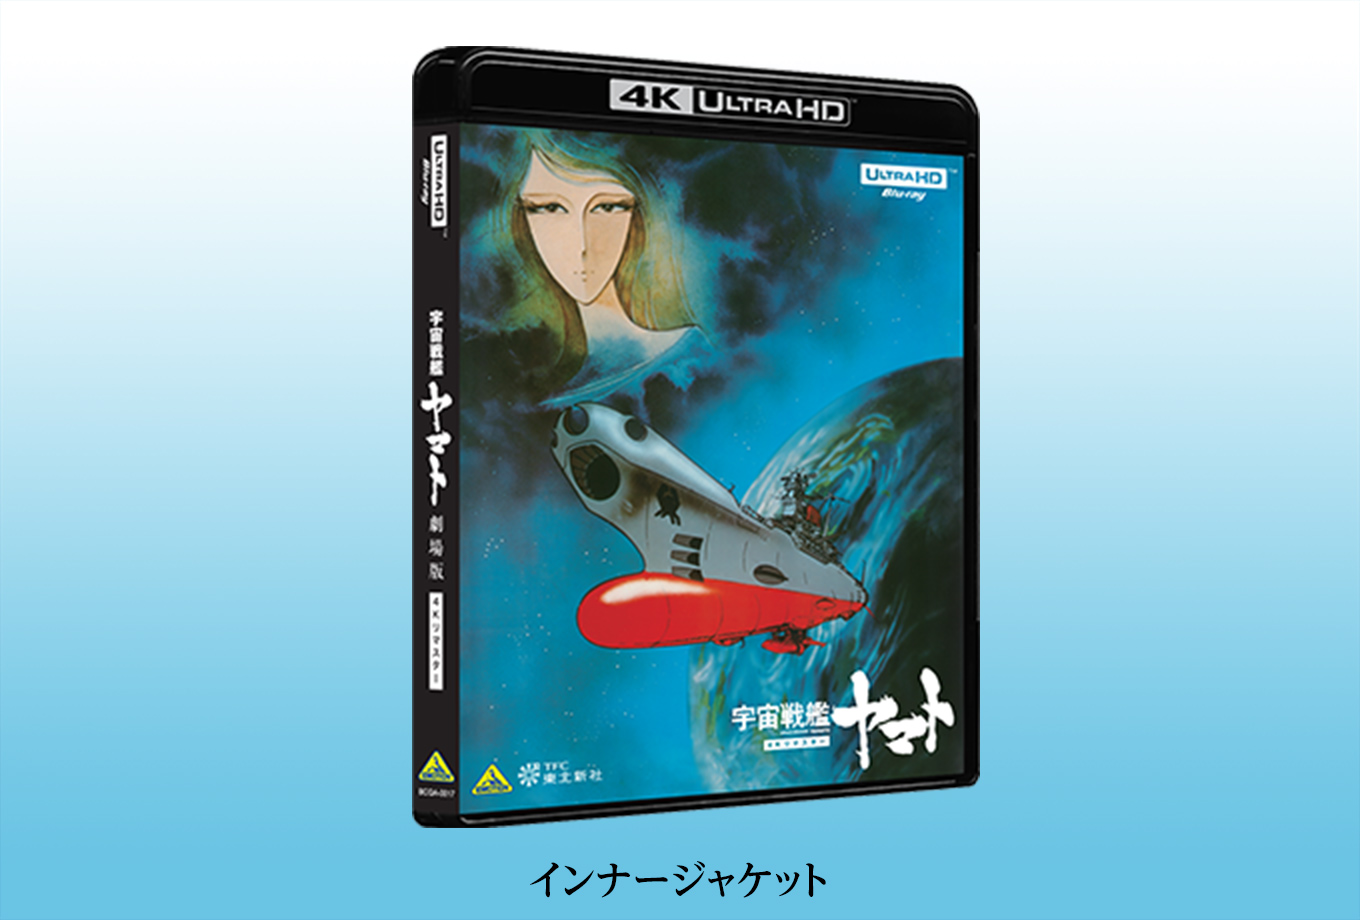 Blu-ray┃宇宙戦艦ヤマト 劇場版 4Kリマスター┃さらば宇宙戦艦ヤマト ...